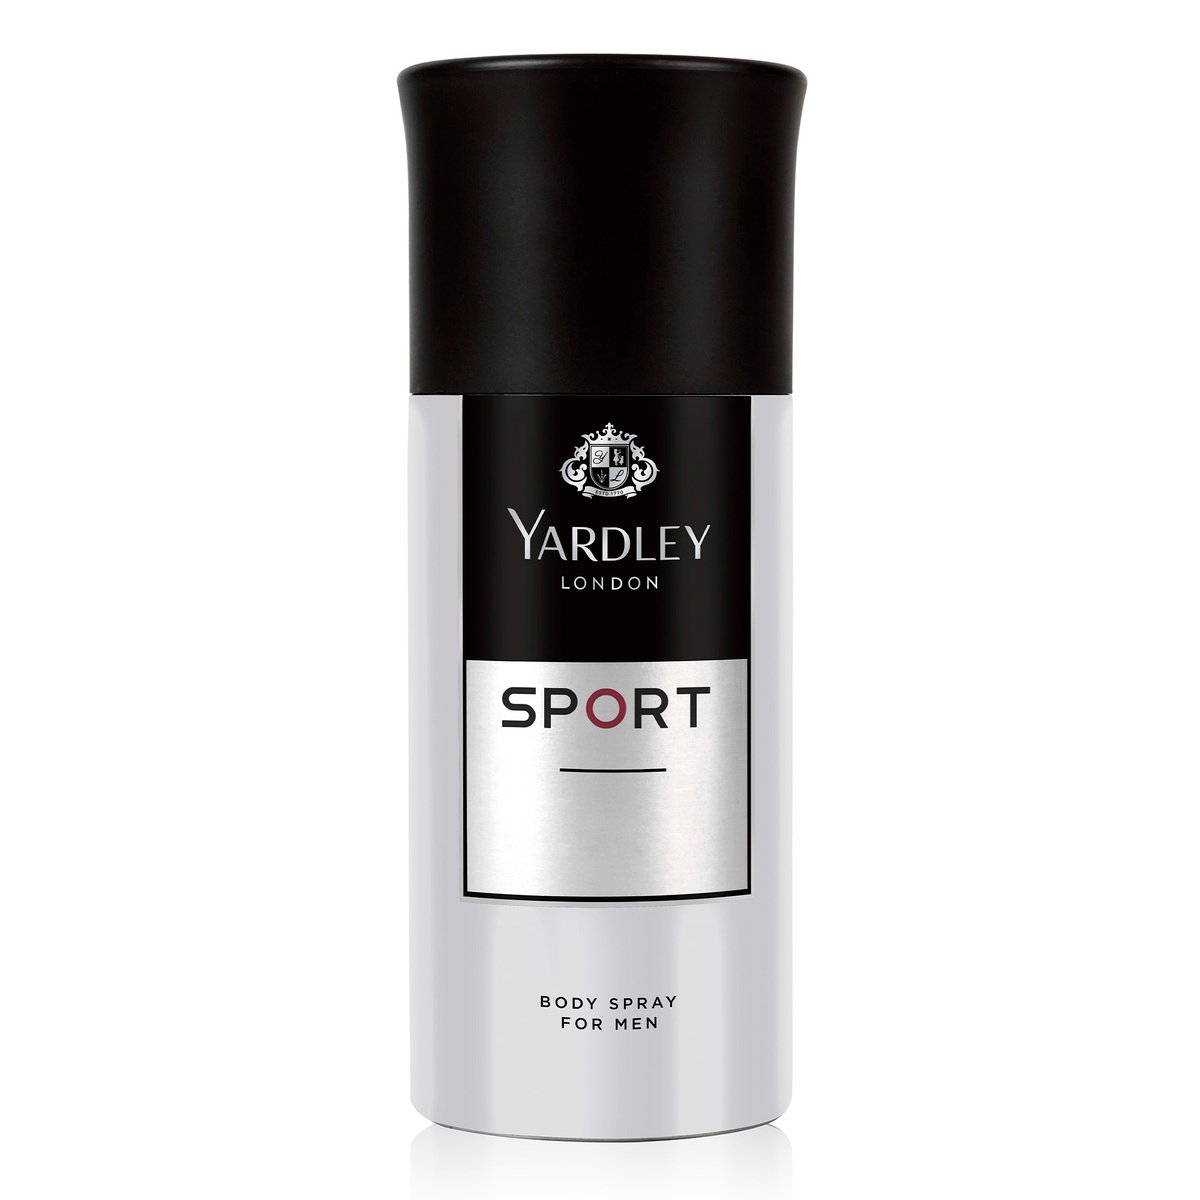 Buy Yardley Sport Body Spray For Men 150 ml Online at Best Price | Mens Deodorants | Lulu UAE in UAE